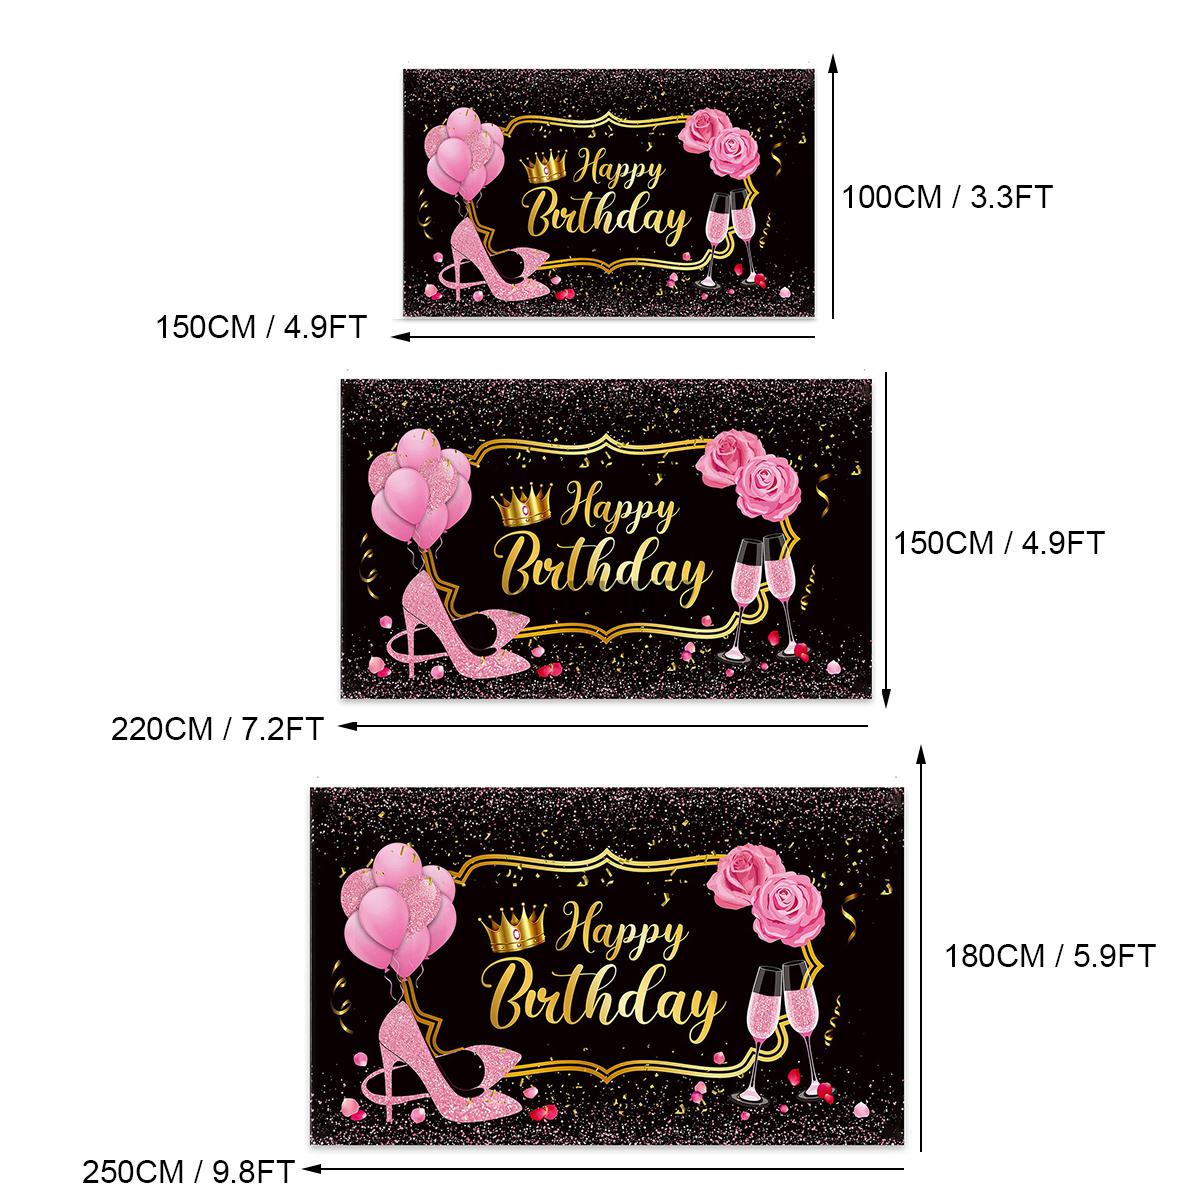 Phông nền vải hình hoa hồng/guốc/ly rượu với bóng bay màu hồng chữ Happy Birthday trang trí tiệc sinh nhật cho nữ